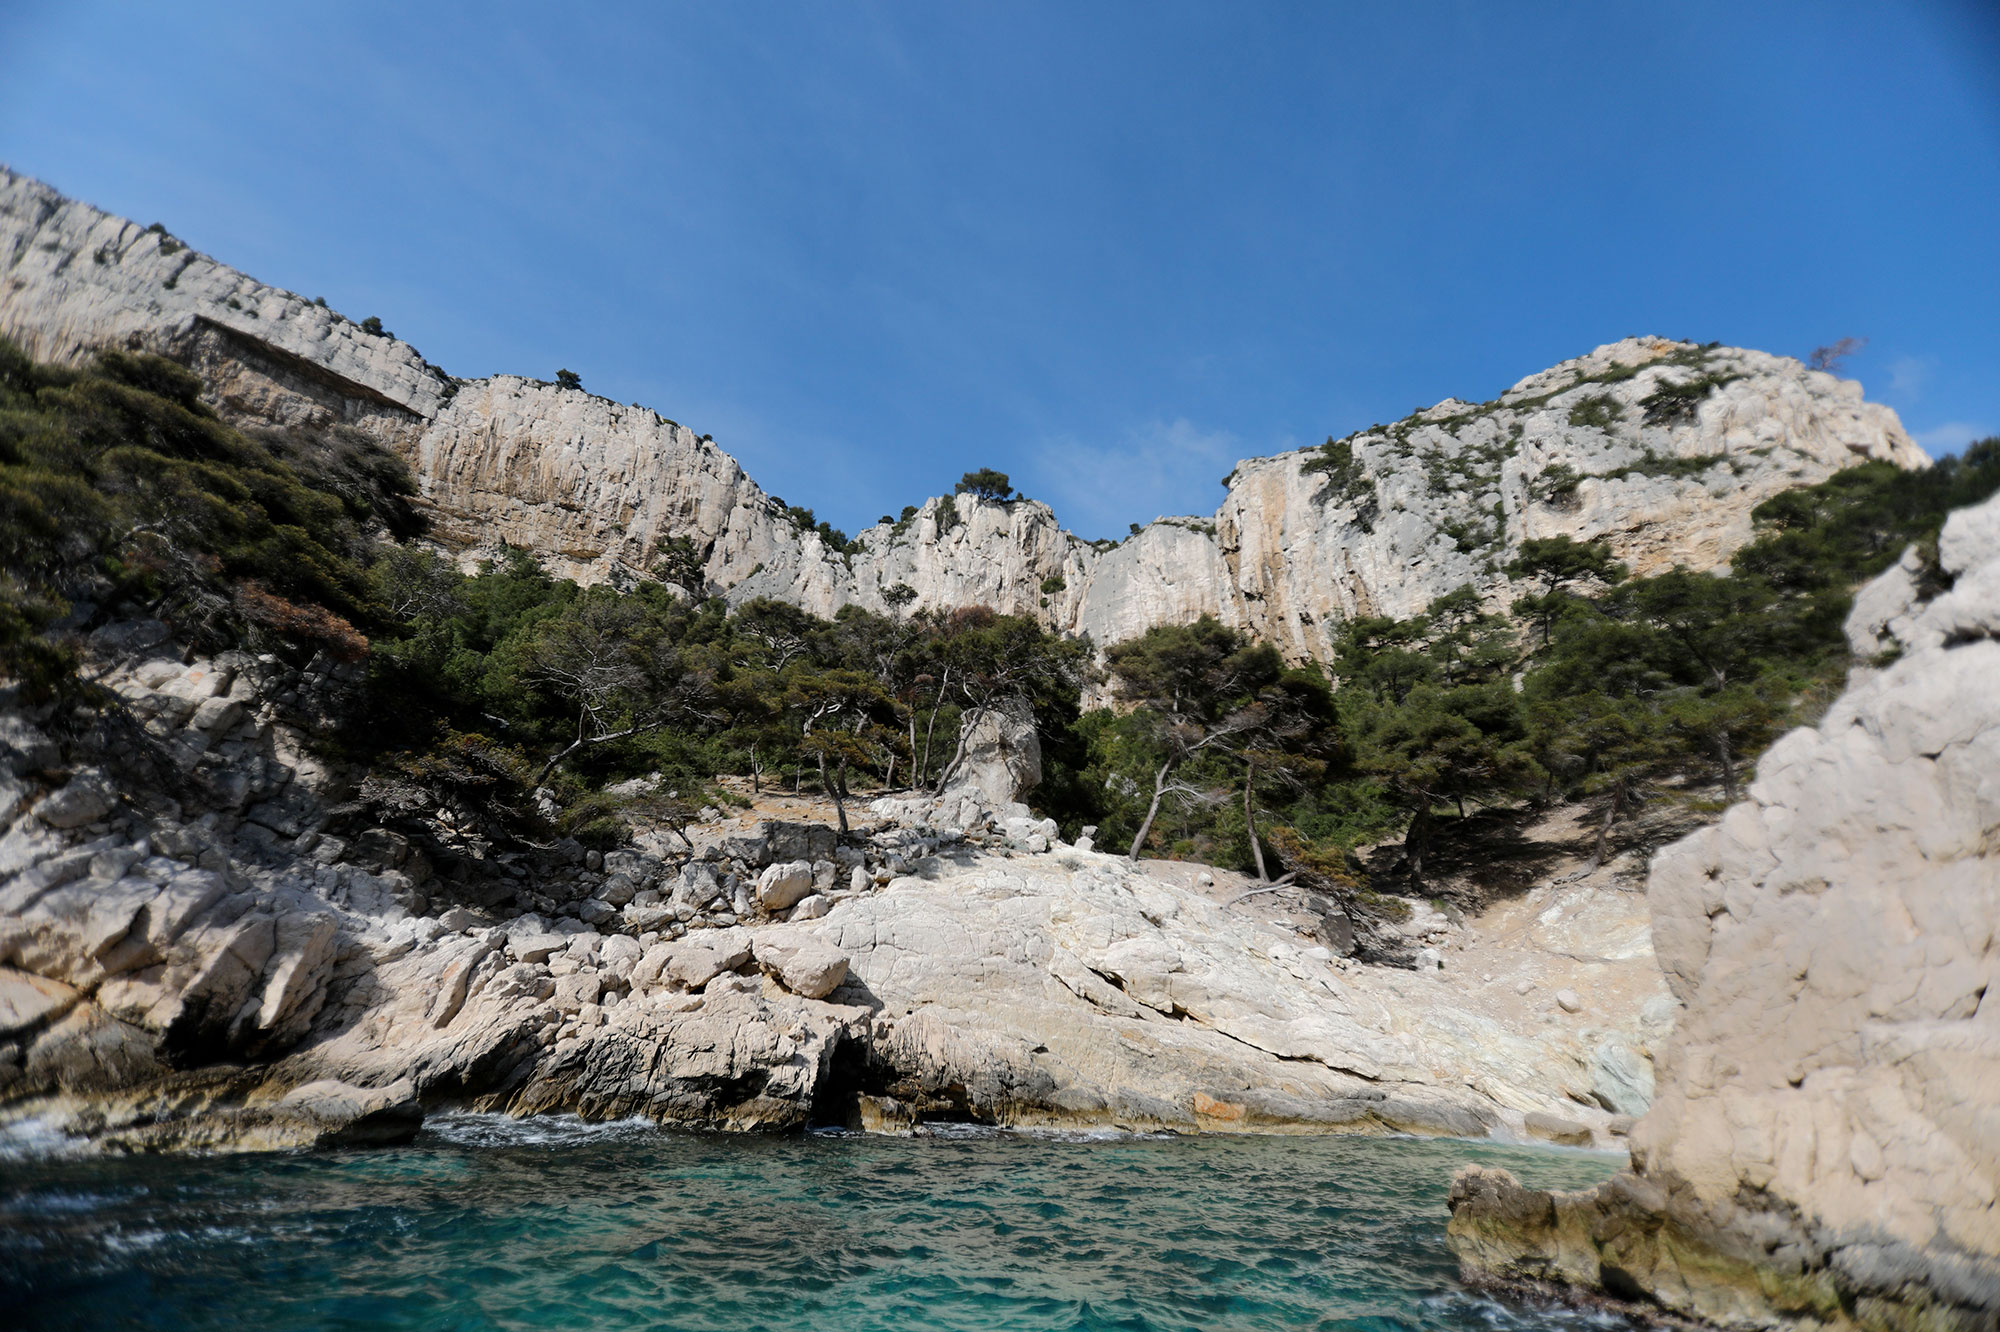 Réservation obligatoire pour se baigner dans certaines calanques de Marseille, une première